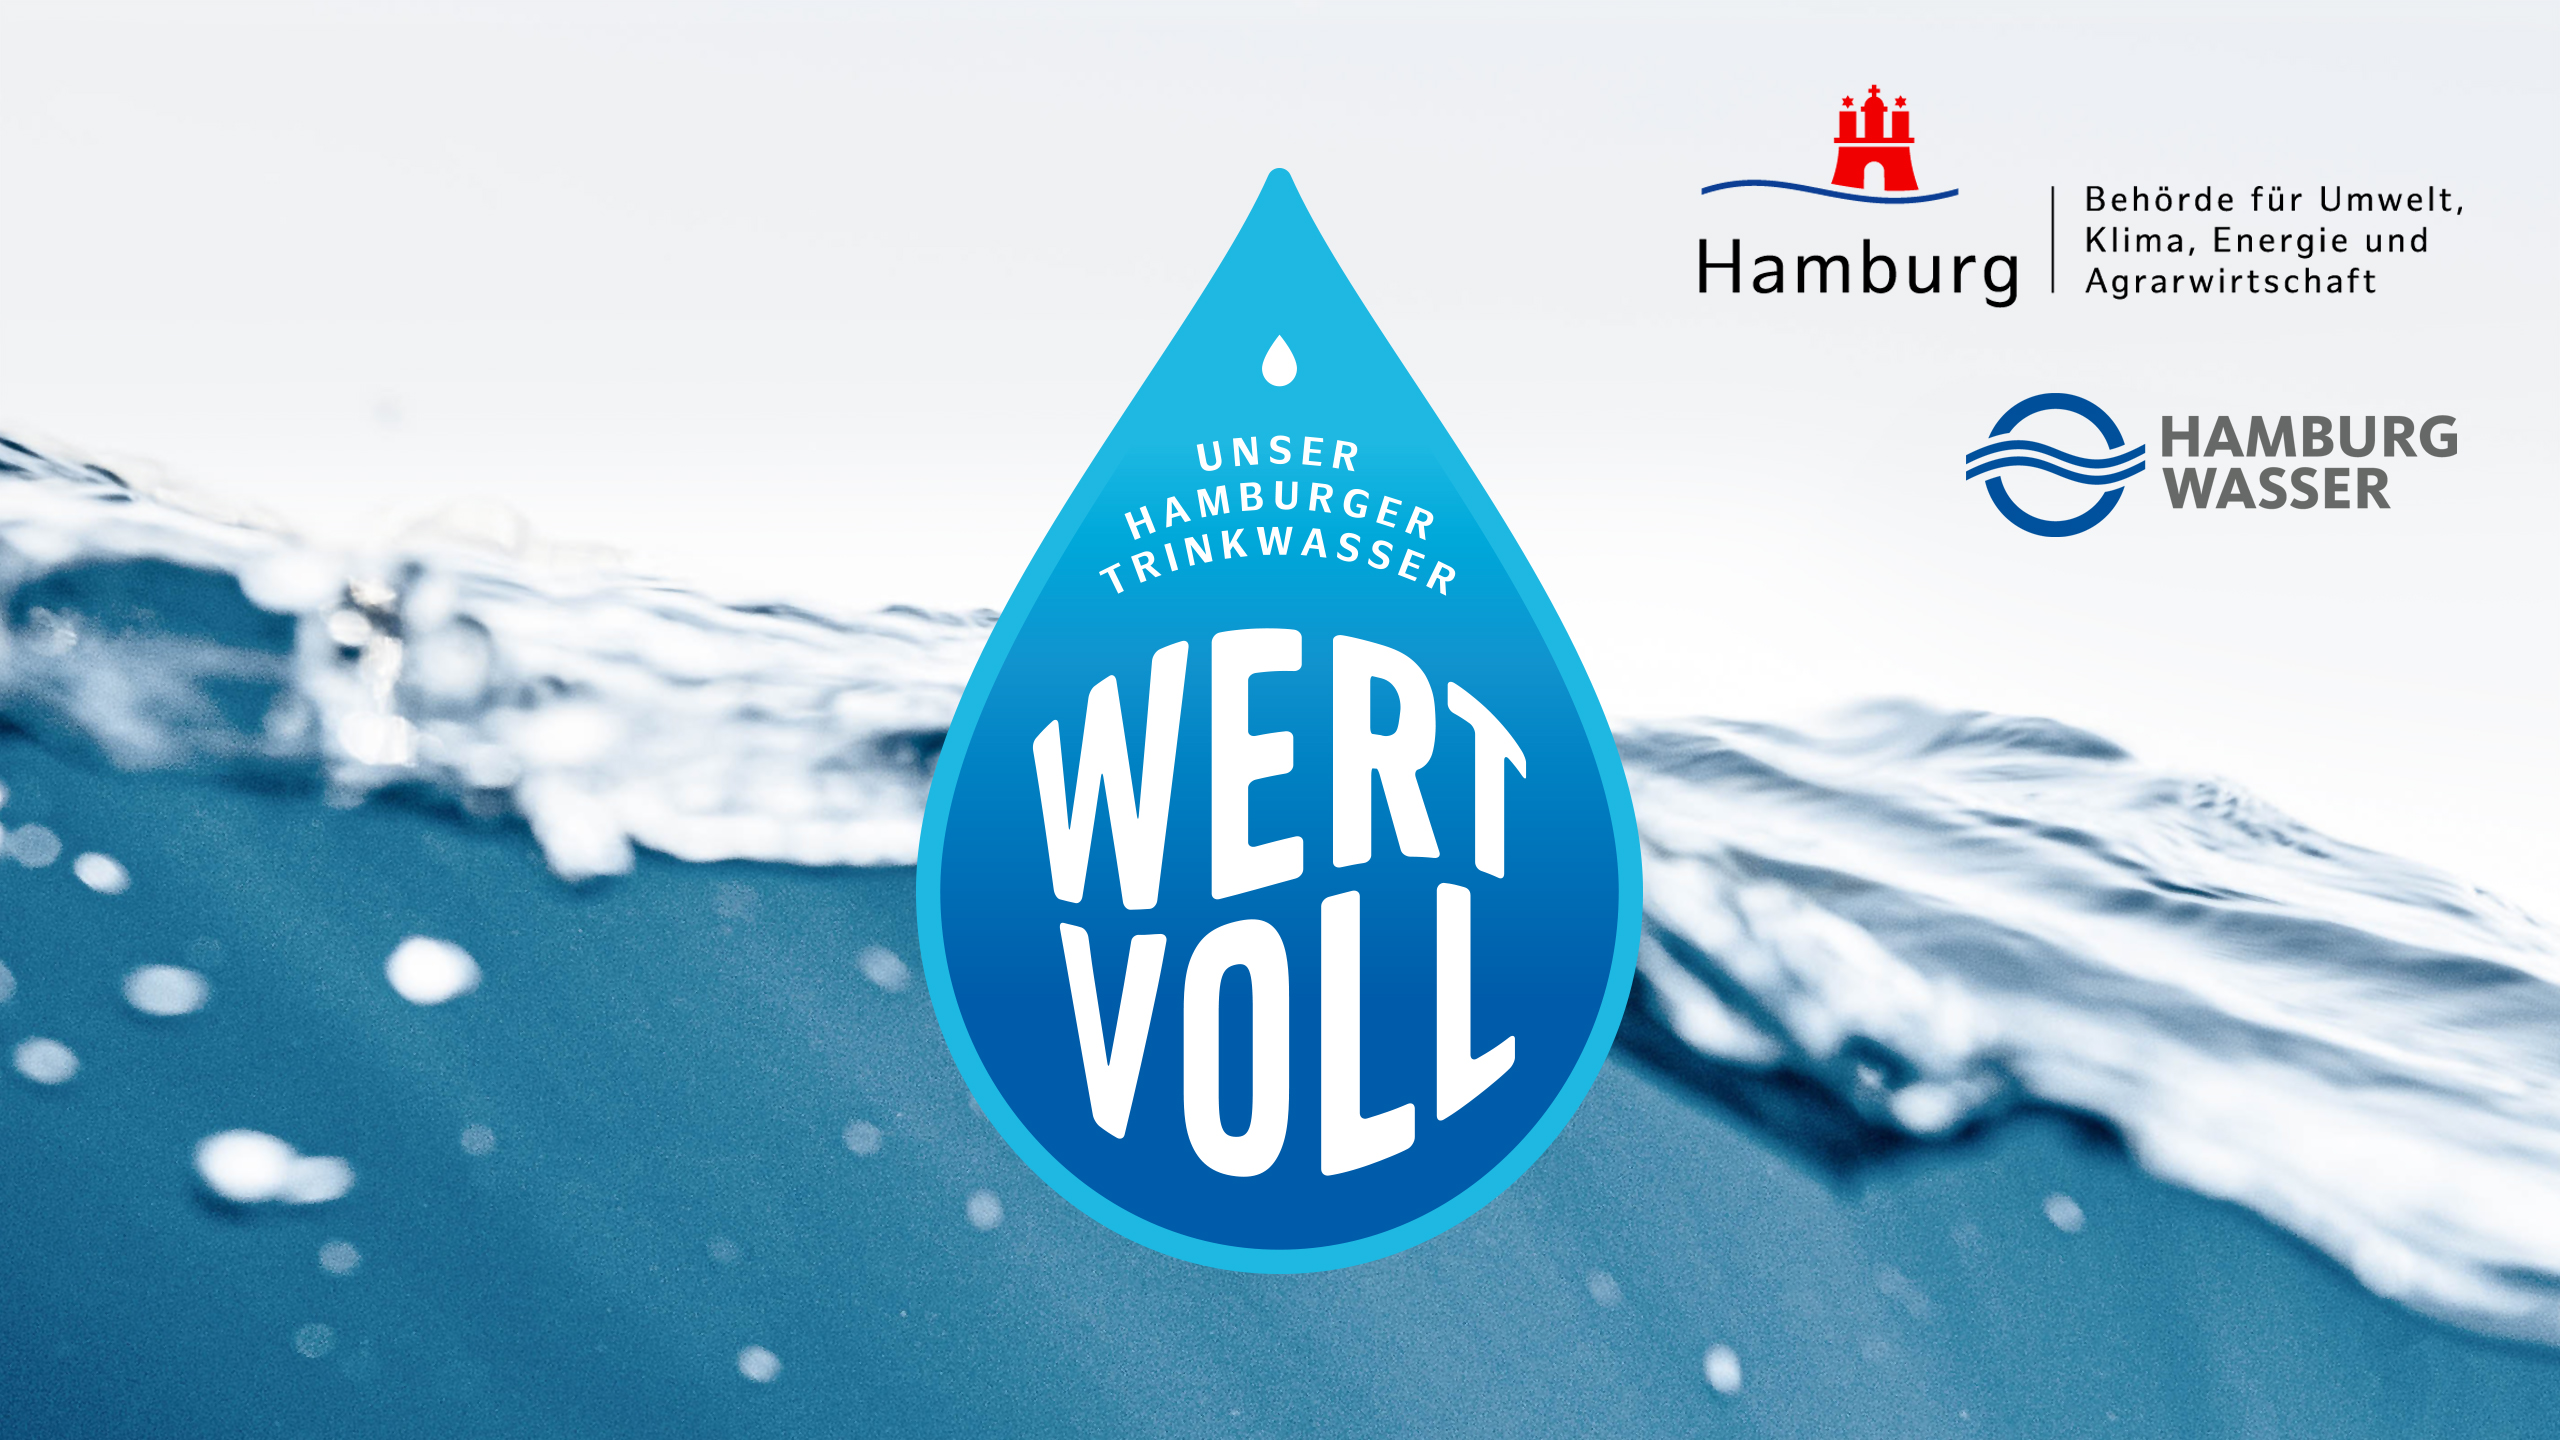  Im Hintergrund ist Wasseroberfläche mit drei verschiedenen Logos zu sehen: Hamburg Wasser; Behörde für Umwelt, Klima und Agrarwirtschaft; Kampagnen-Logo Unser Hamburger Trinkwasser: Wertvoll